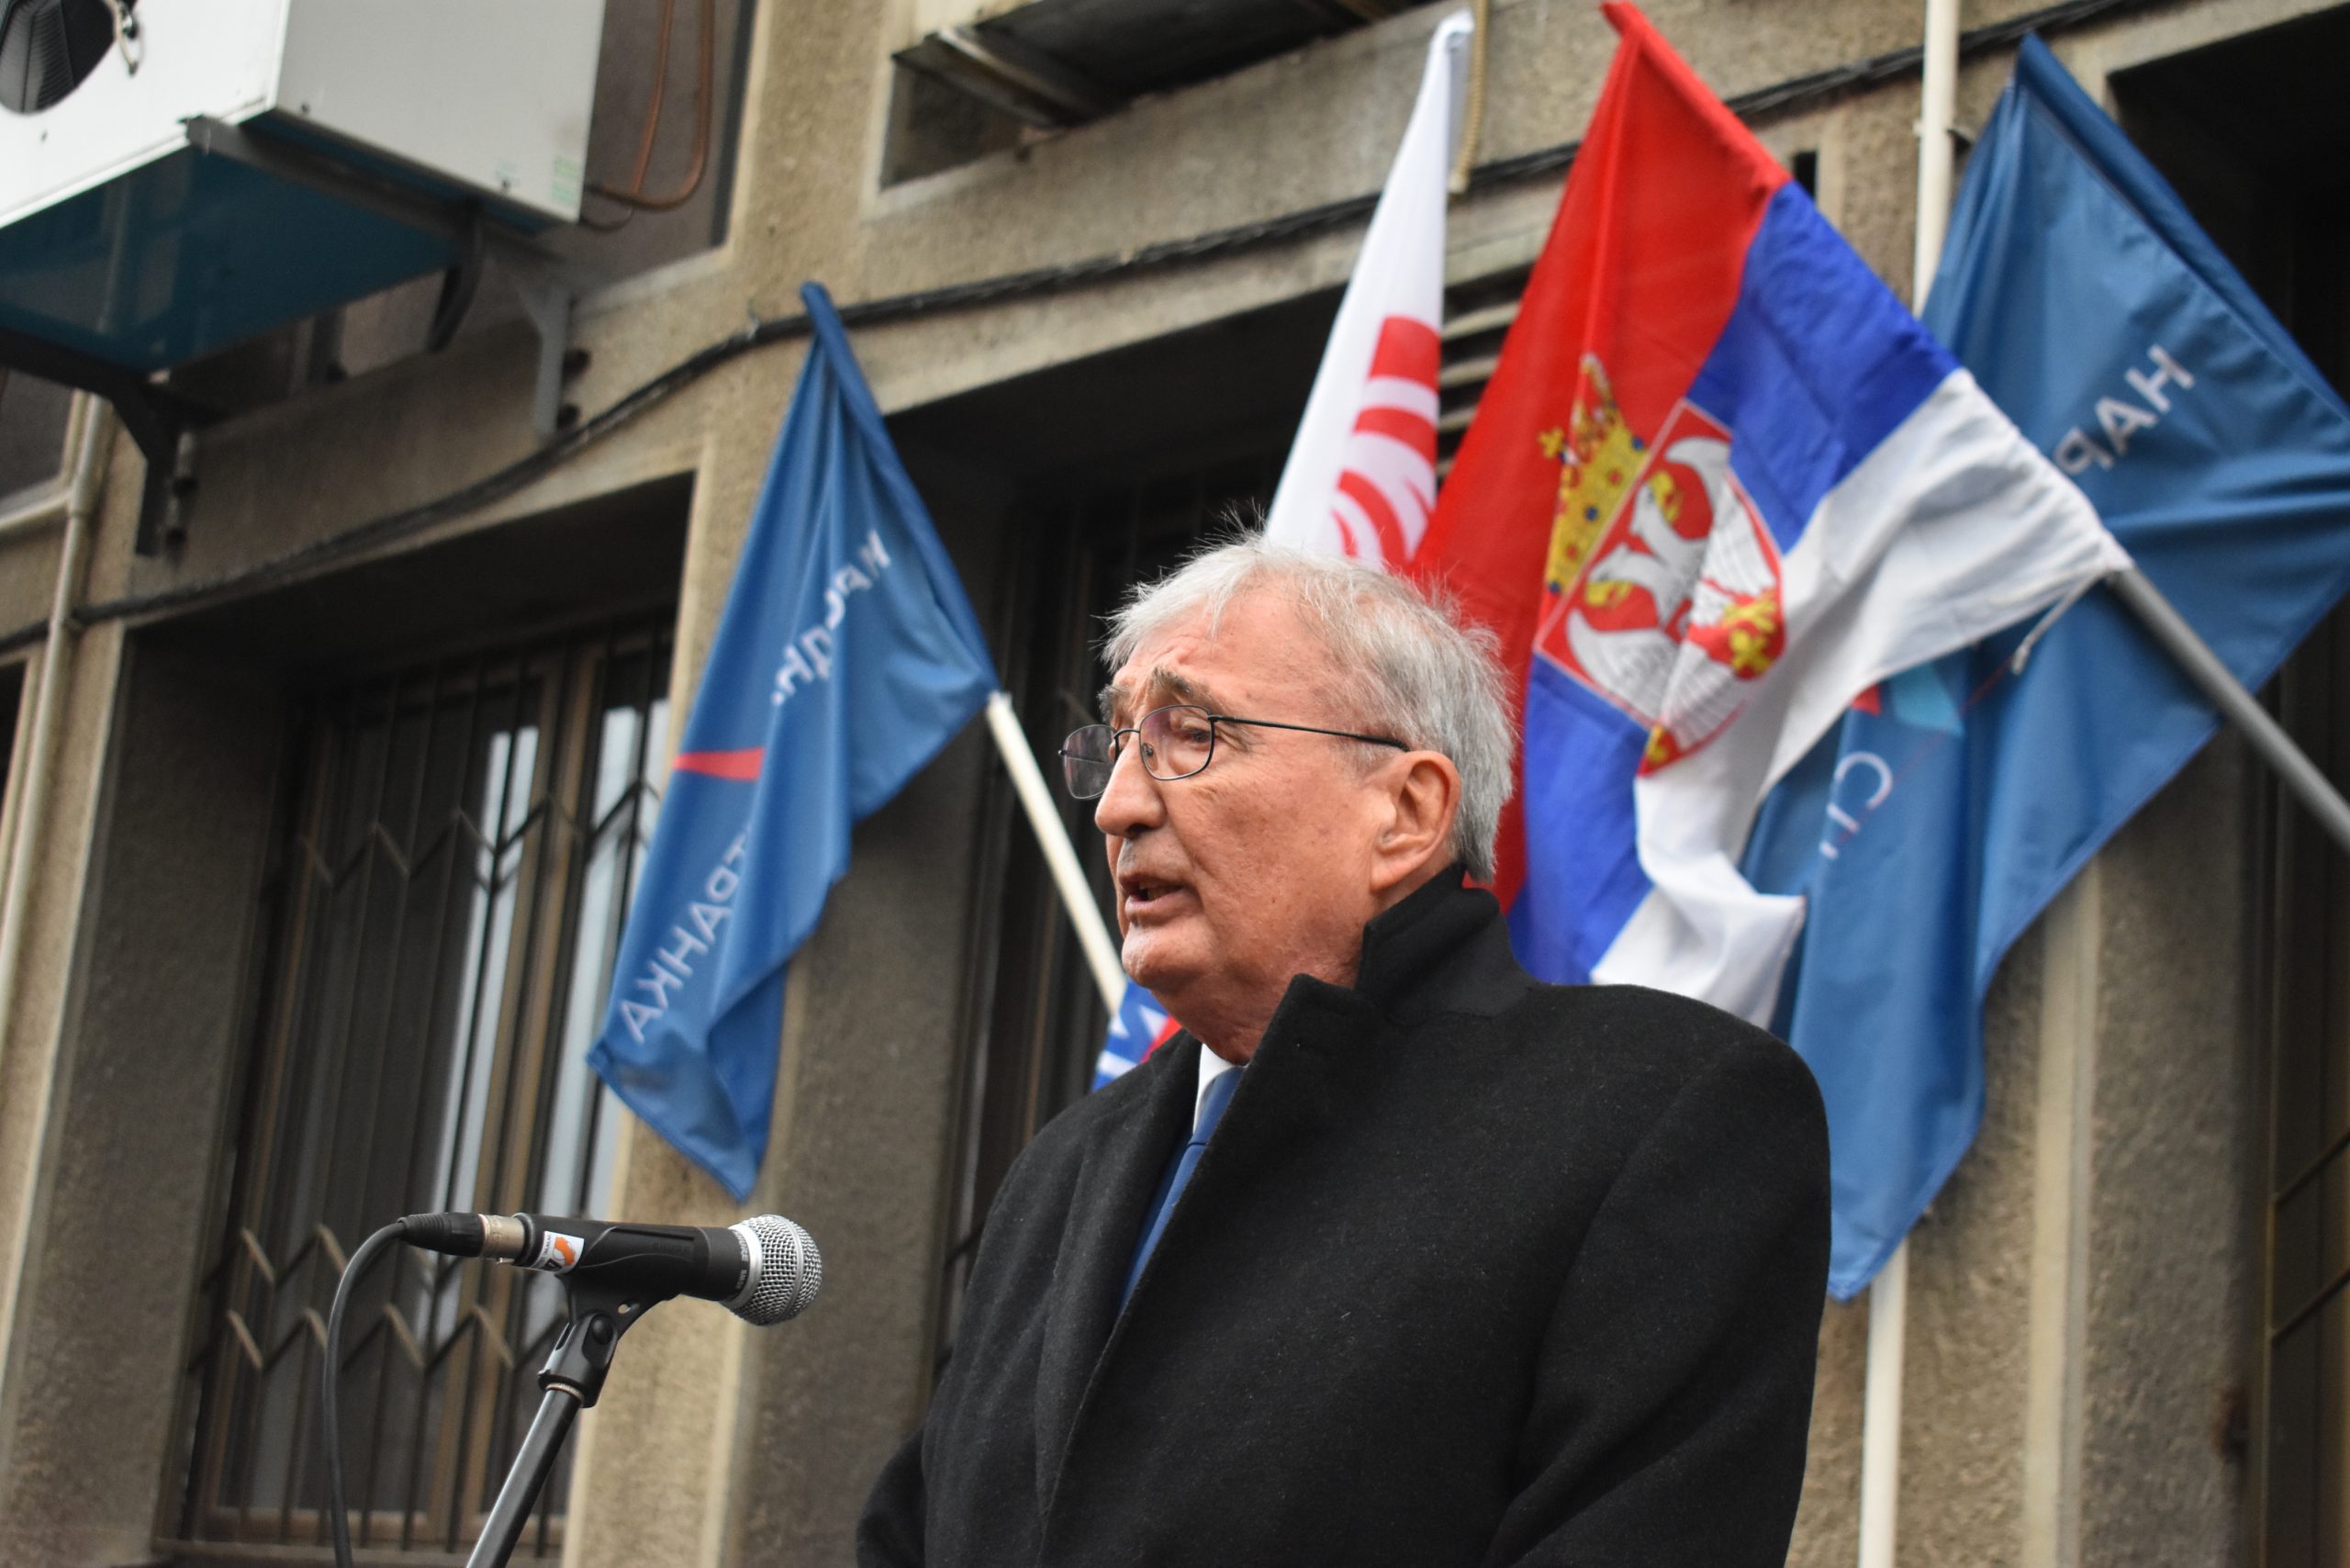 Čedomir Čupić Vranje, Ujedinjeni za pobedu Srbije, miting, predizborna kampanja